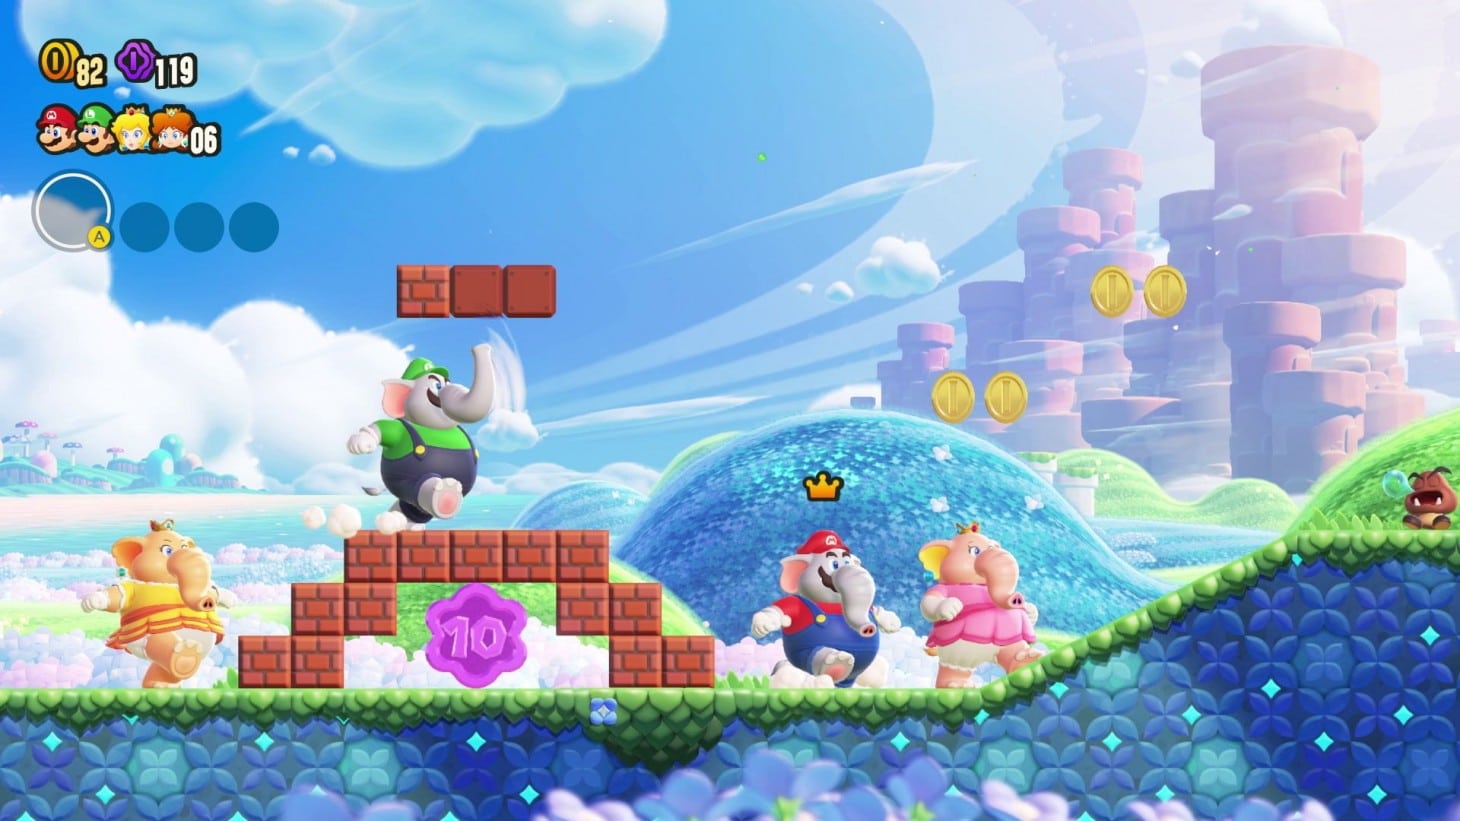 Οι διαρροές του Super Mario Bros. Wonder έχουν αρχίσει να εμφανίζονται στο διαδίκτυο